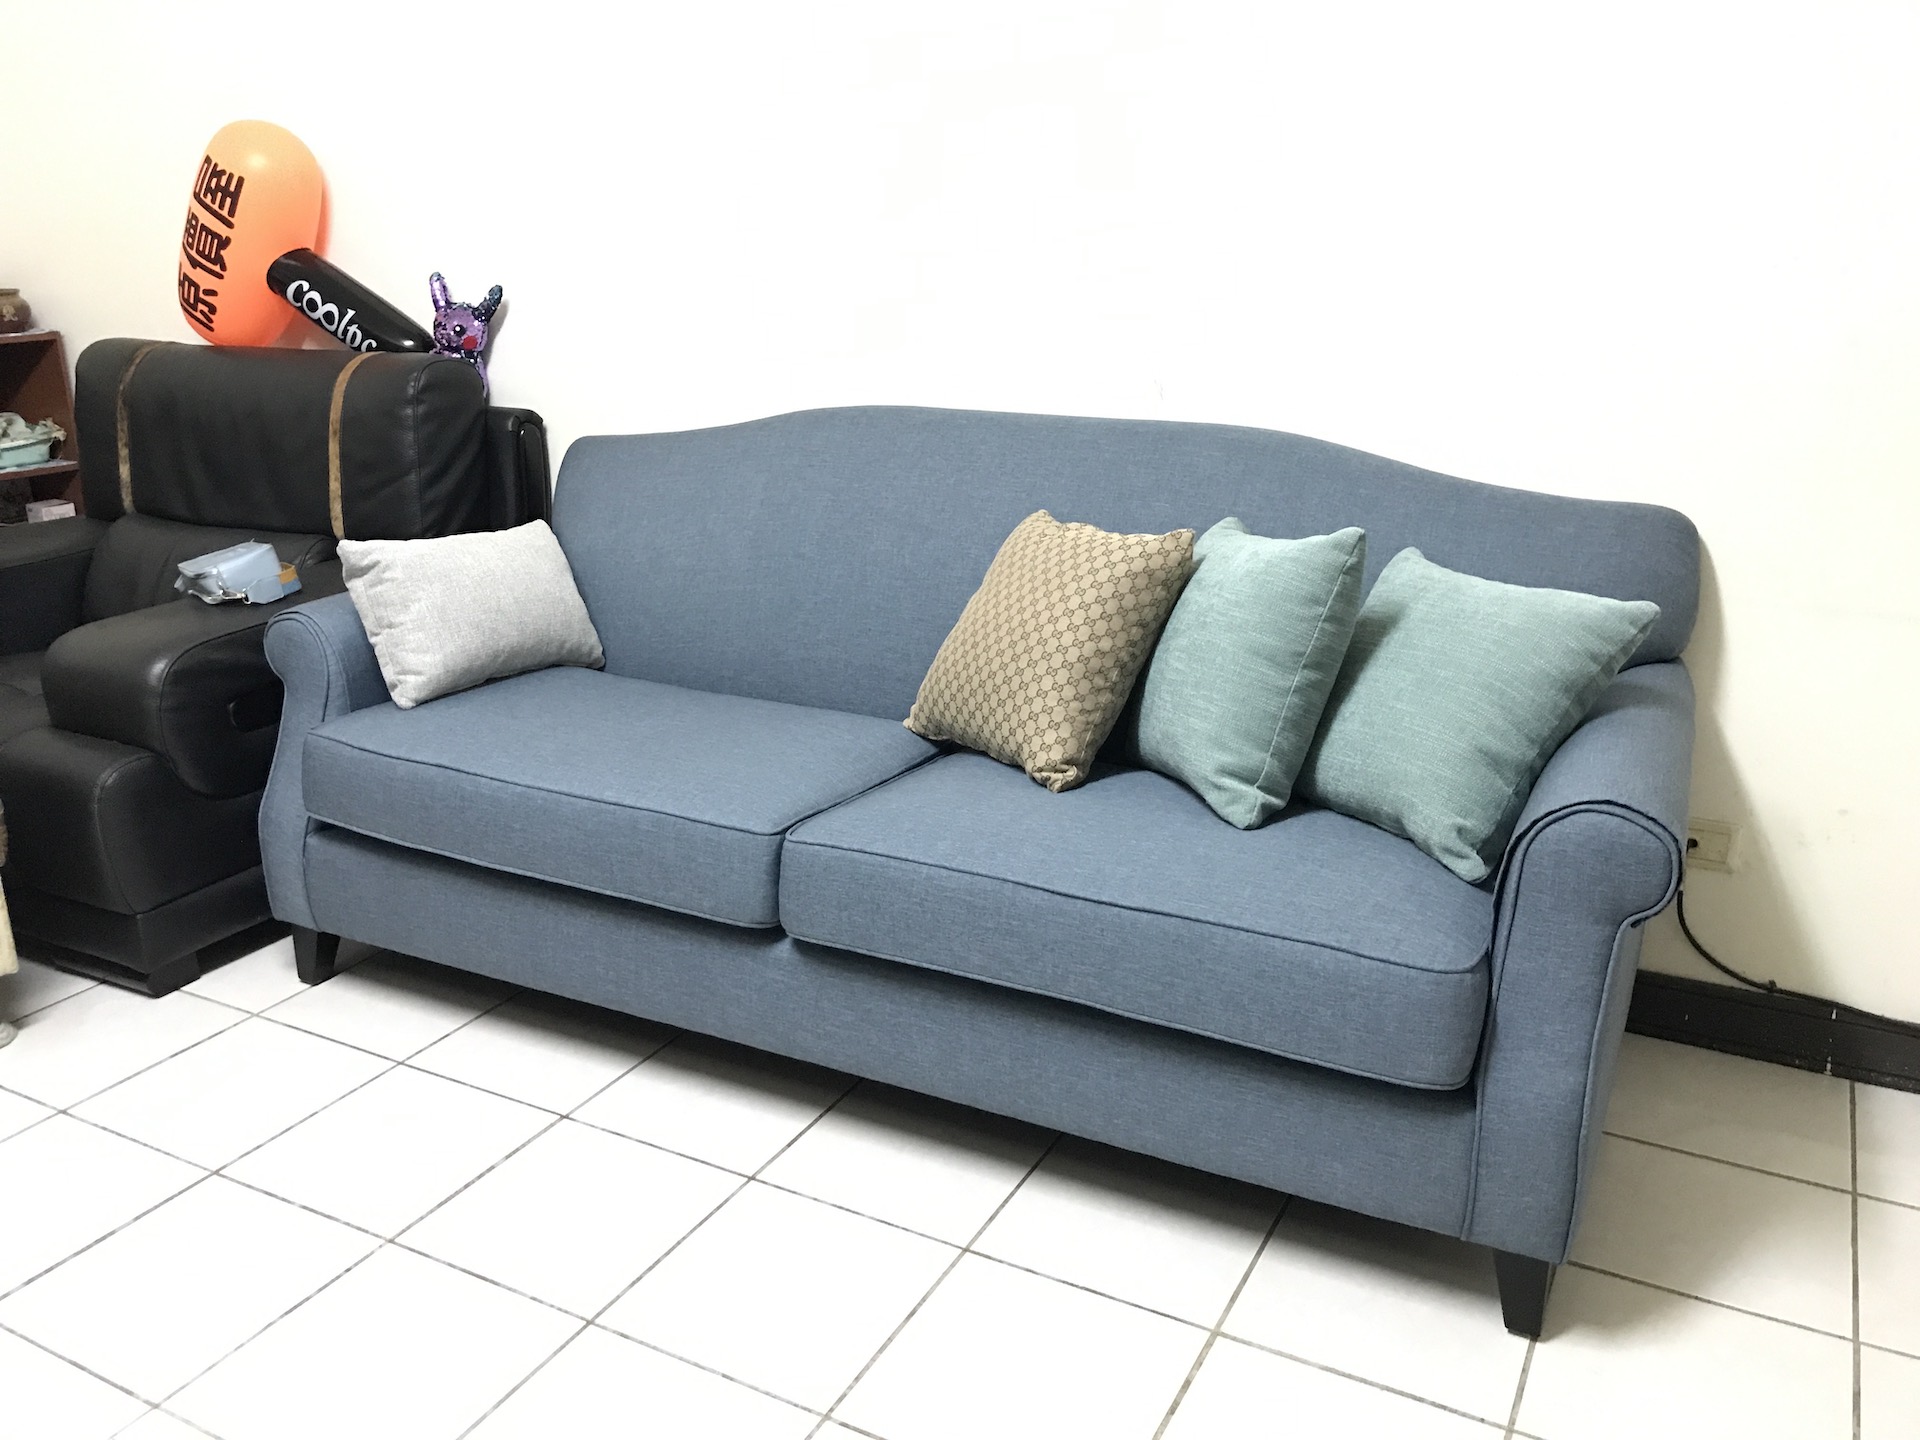 【客戶案例分享】台中許先生古典造型沙發